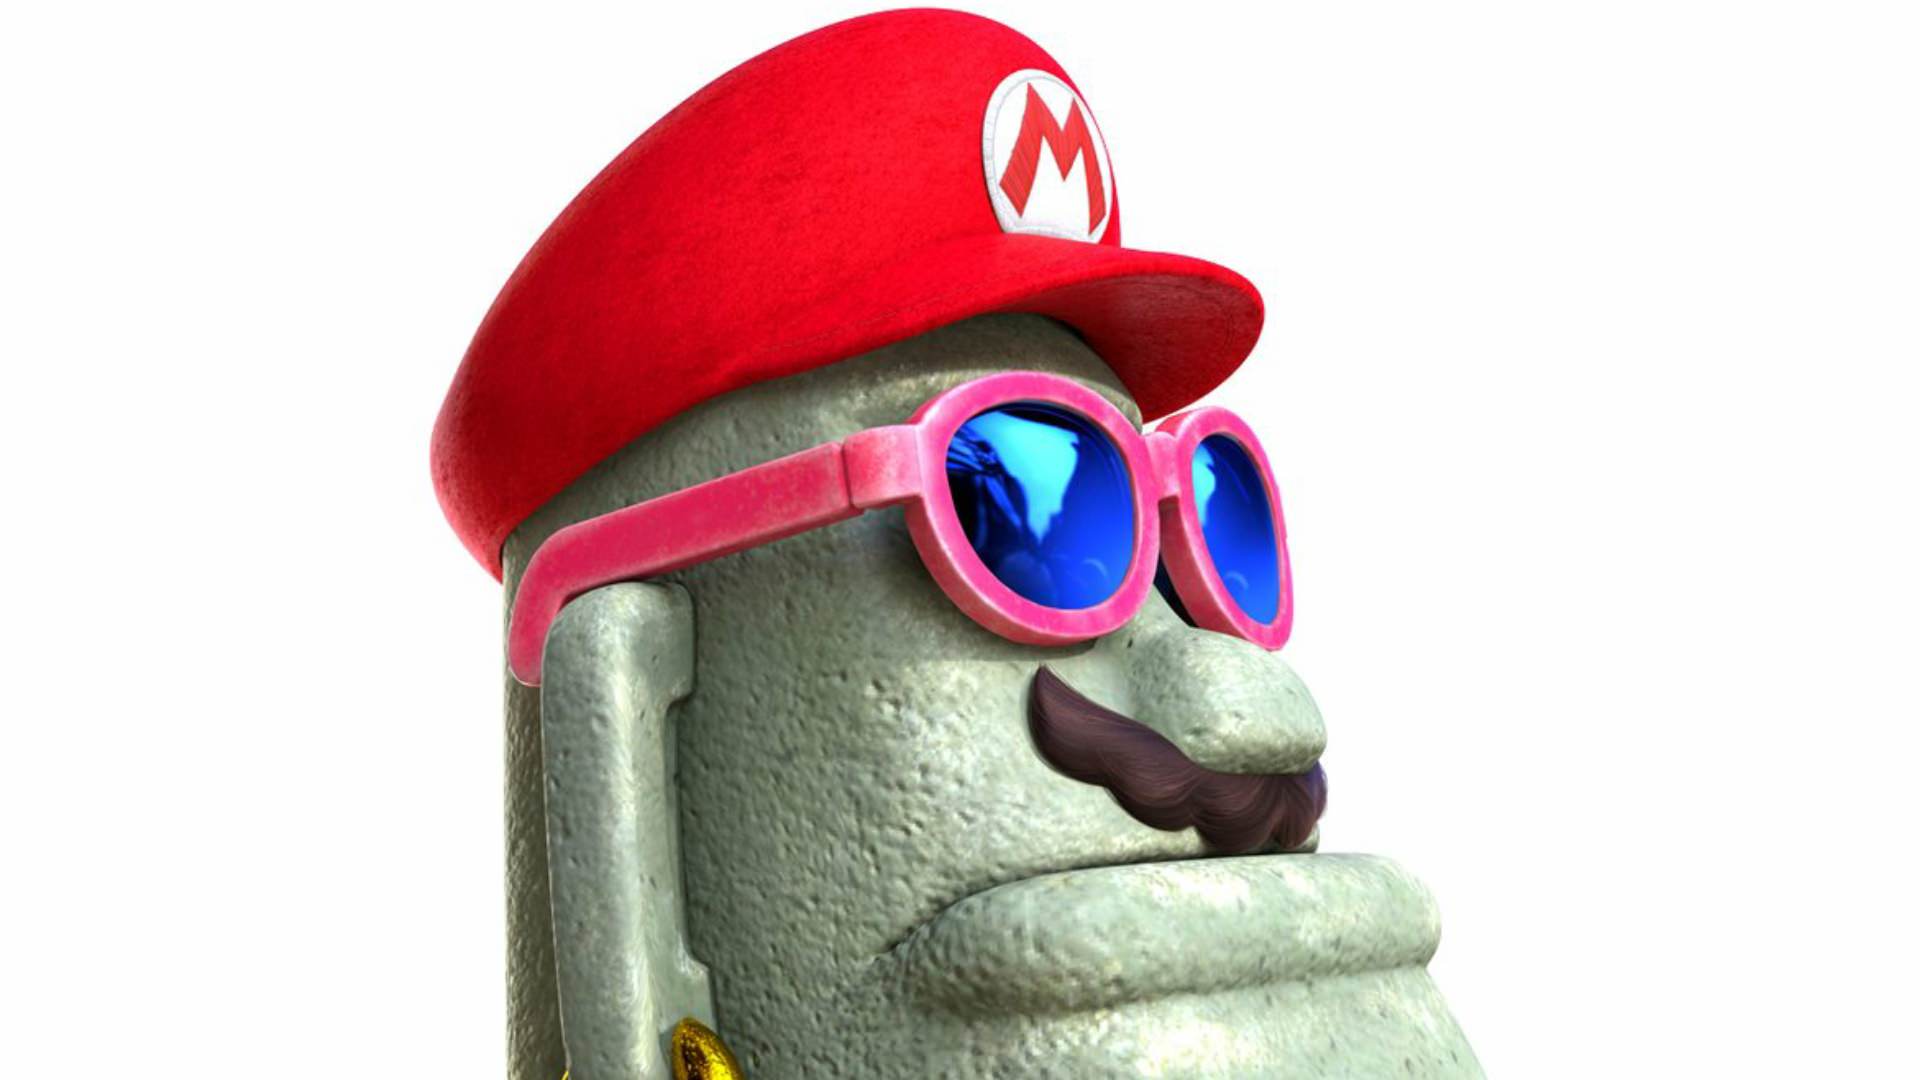 Mo-Guay es presentado oficialmente a través de la cuenta oficial de Super Mario en español